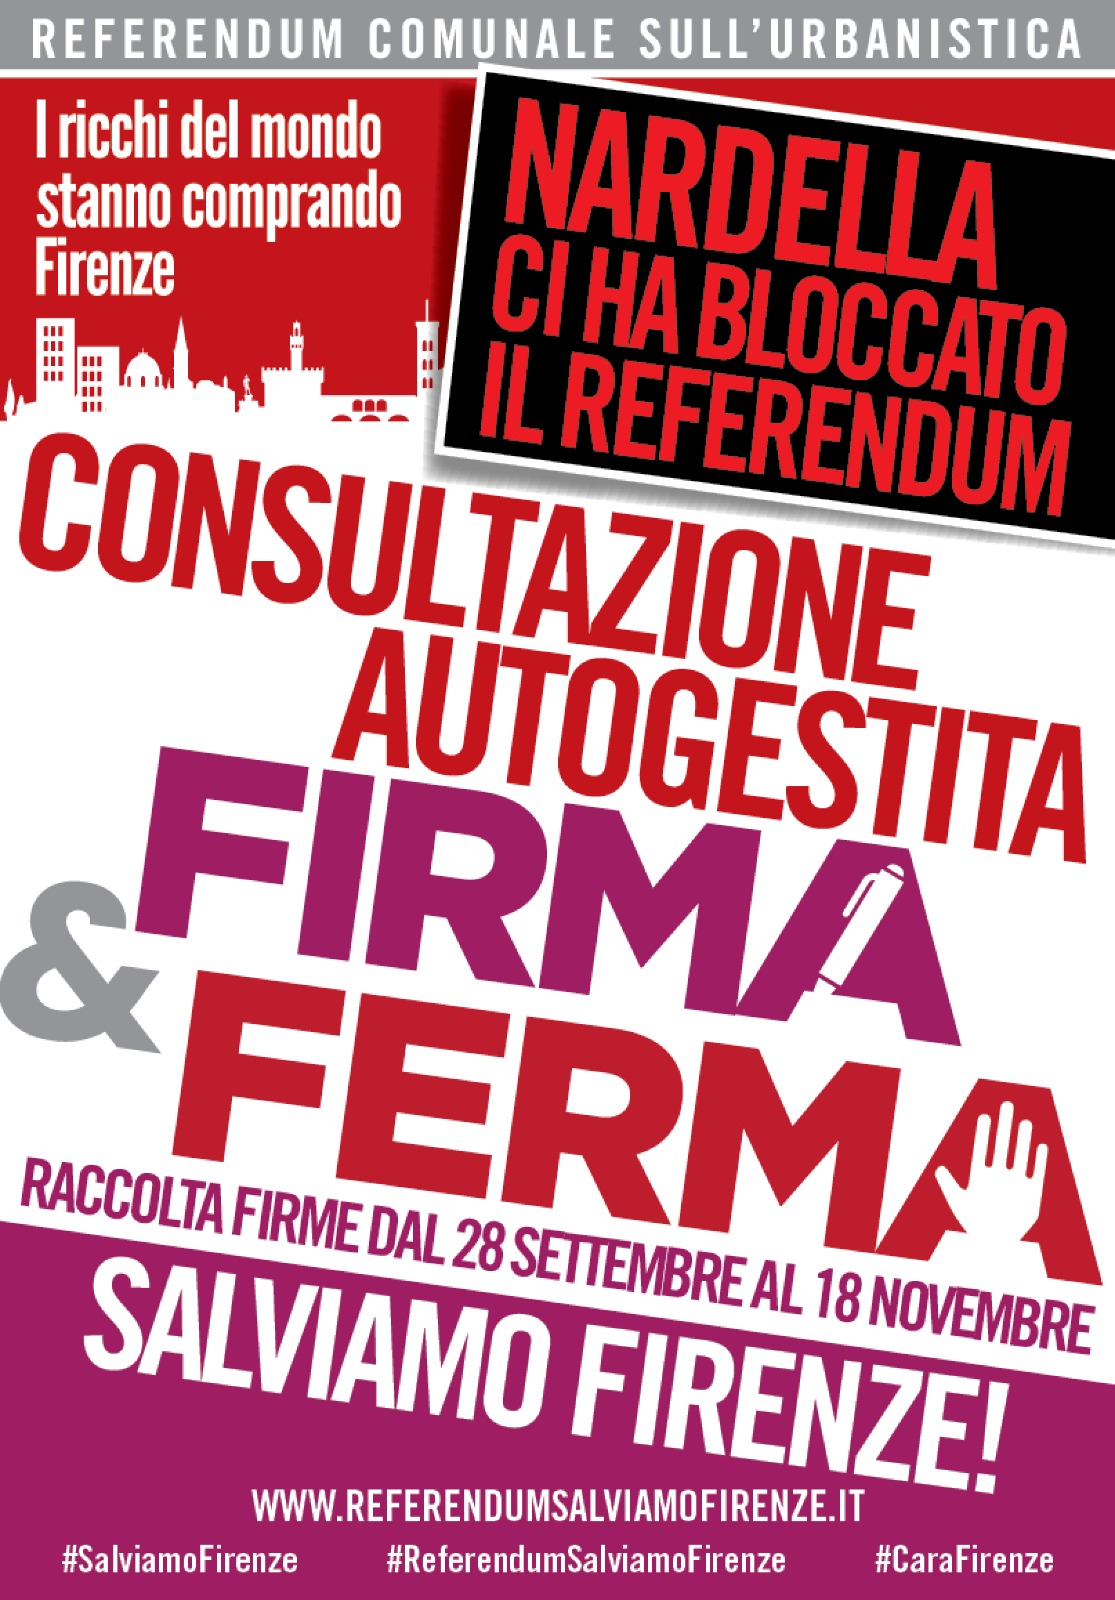 Salviamo Firenze lancia Consultazione Autogestita giovedì 28 settembre